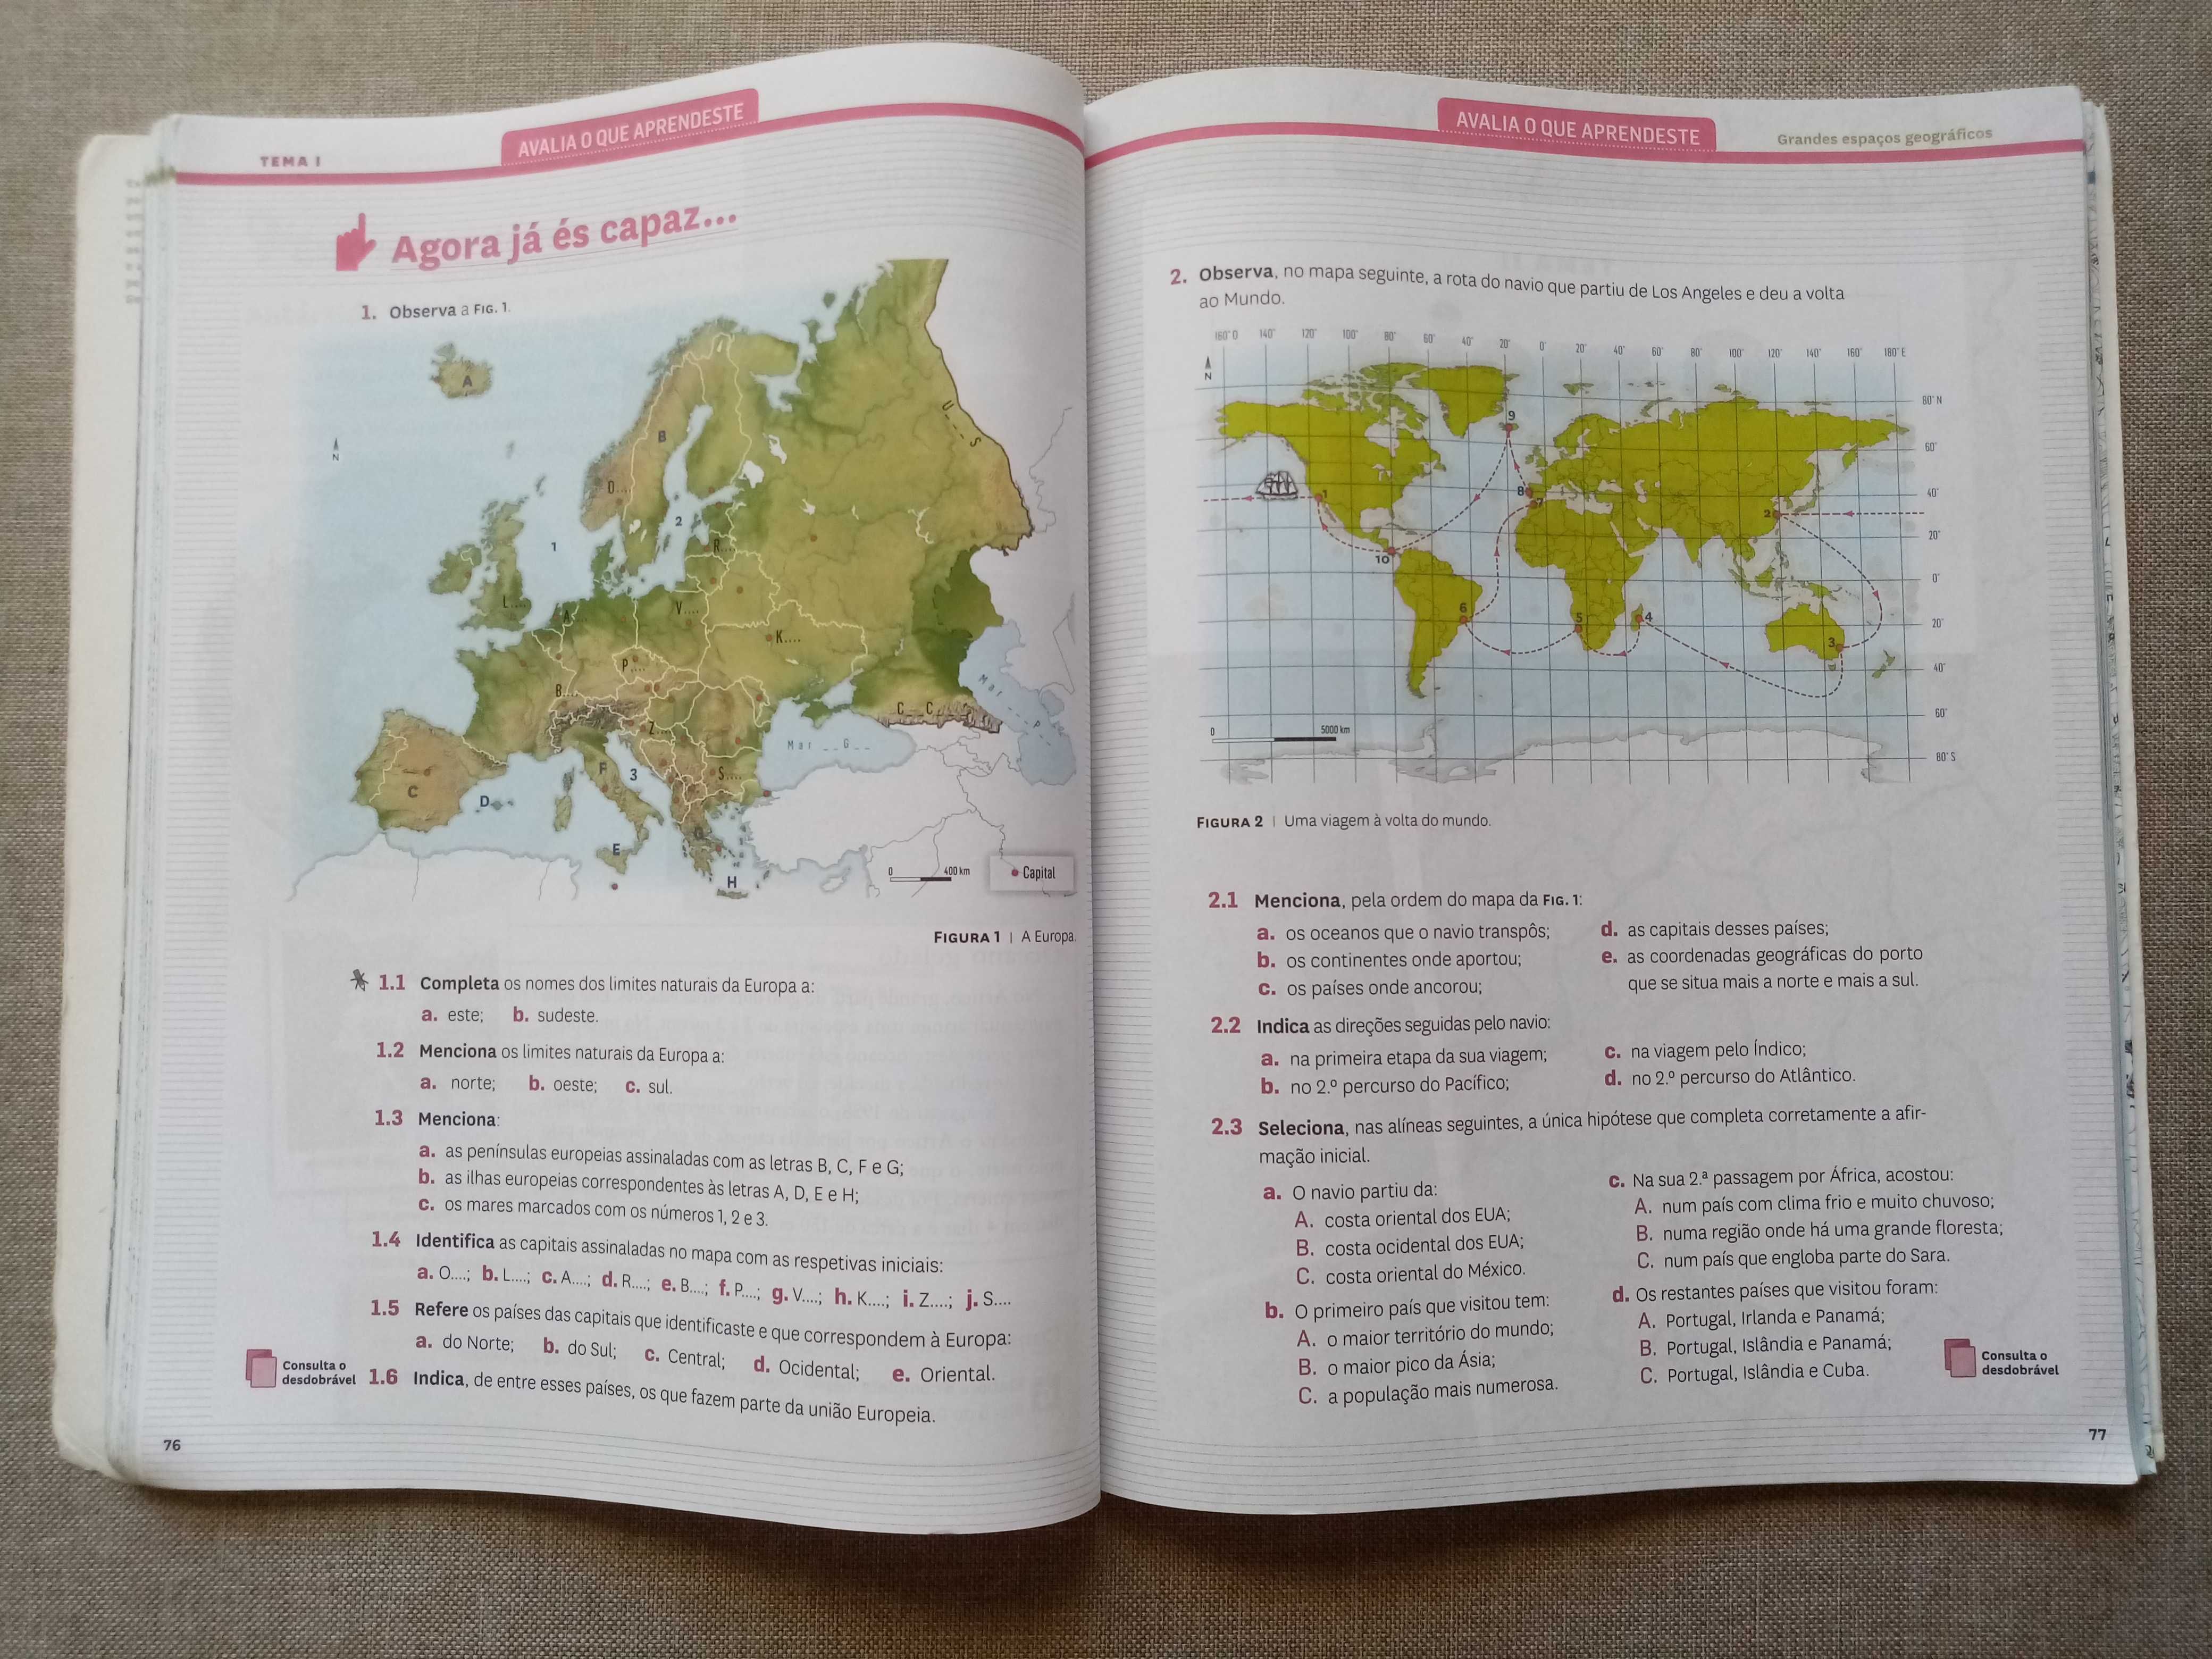 Manual Geografia 7ºano: "Mapa-Mundo"